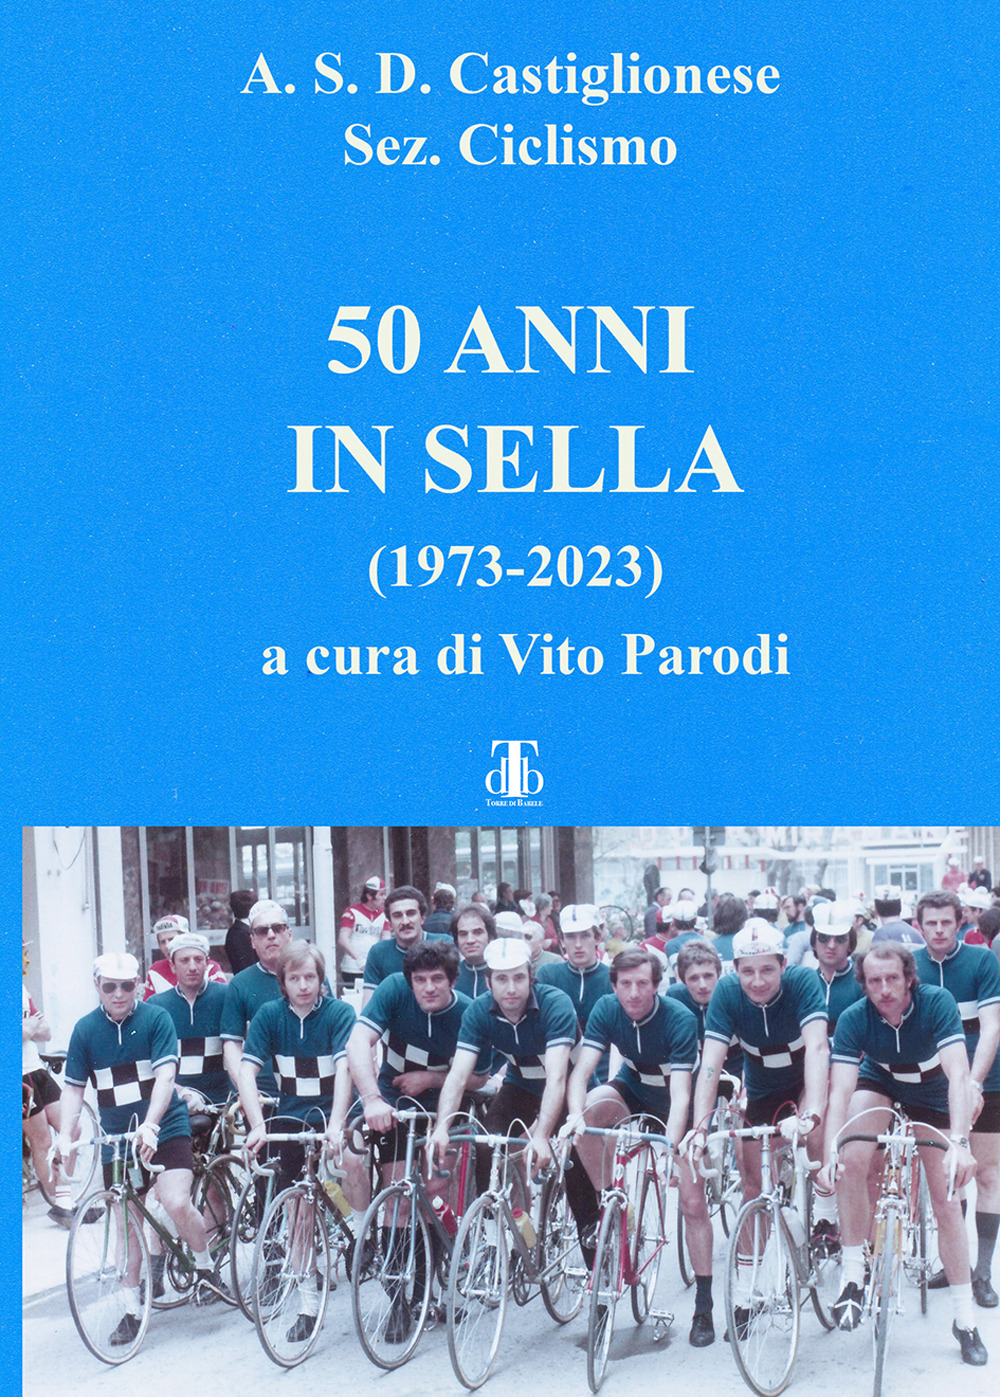 50 anni in sella (1973-2023)